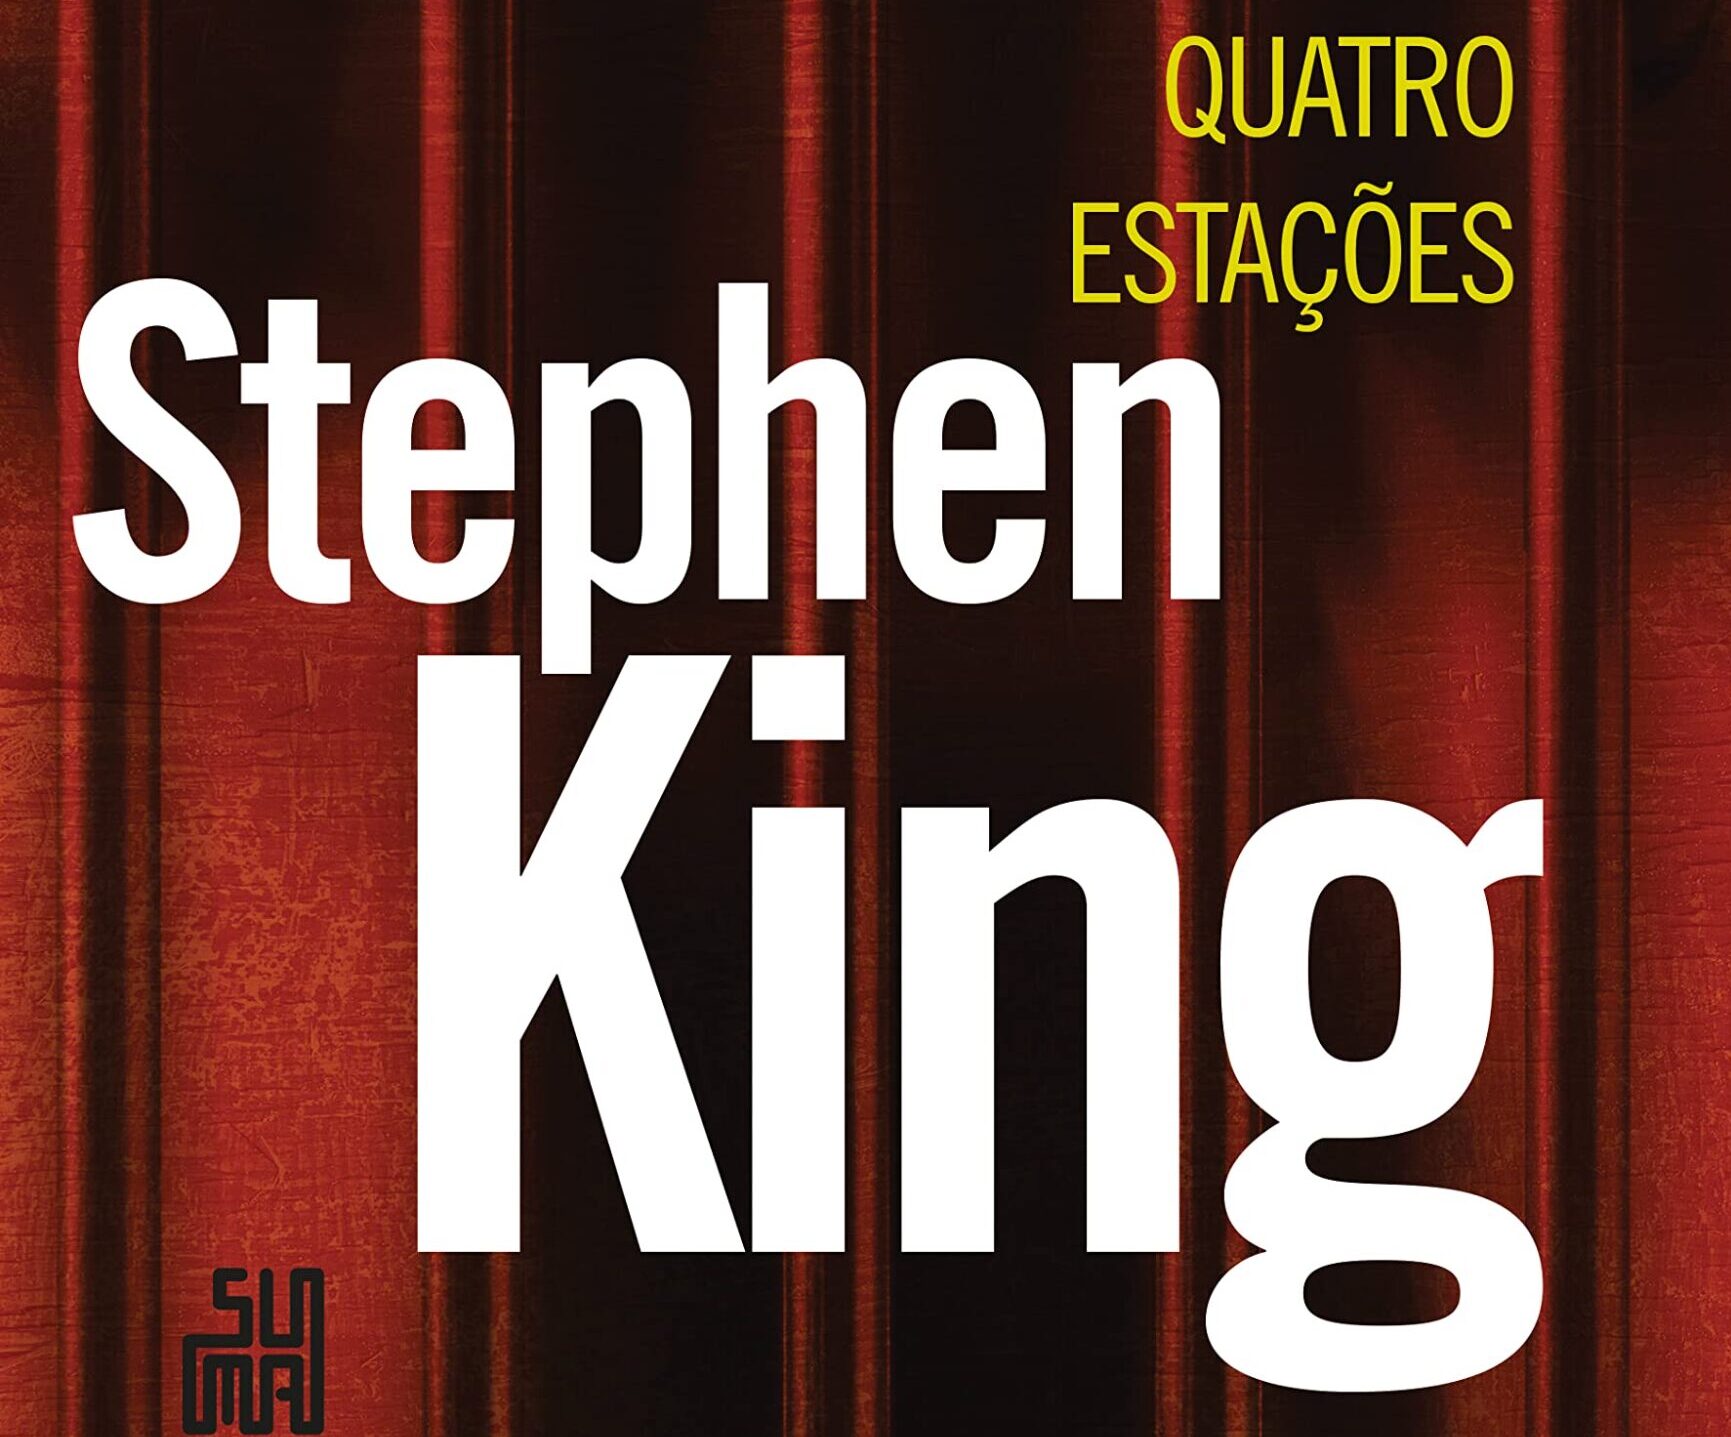 Quatro Estações: Resenha do livro de contos de Stephen King 10